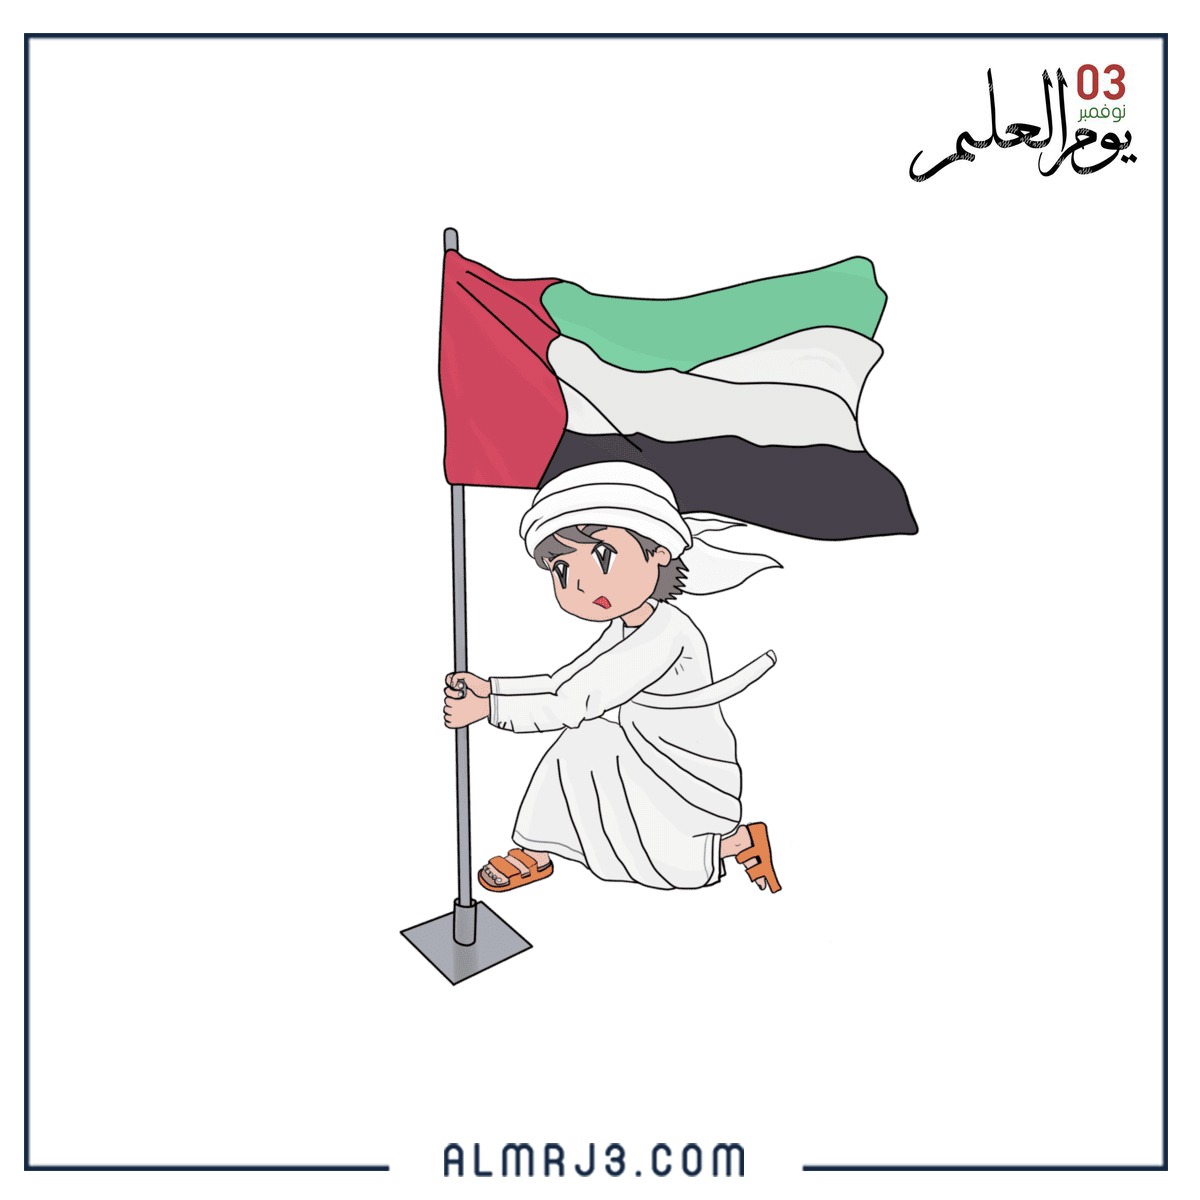 صور أطفال يوم العلم الاماراتي